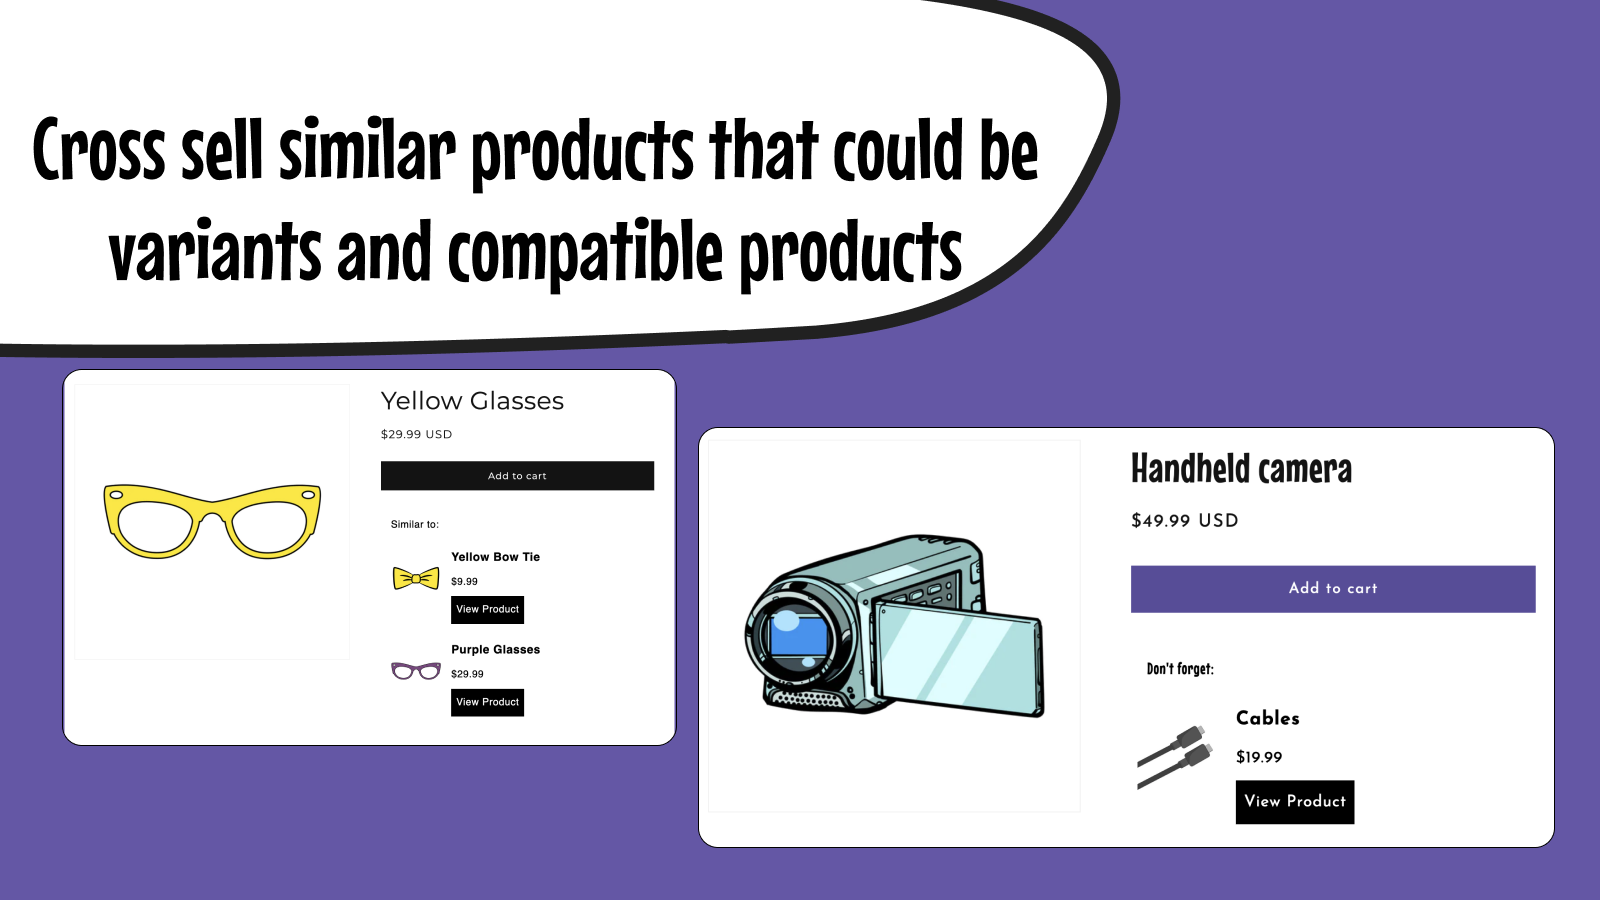 Cross-sell vergelijkbare producten die varianten of compatibel kunnen zijn